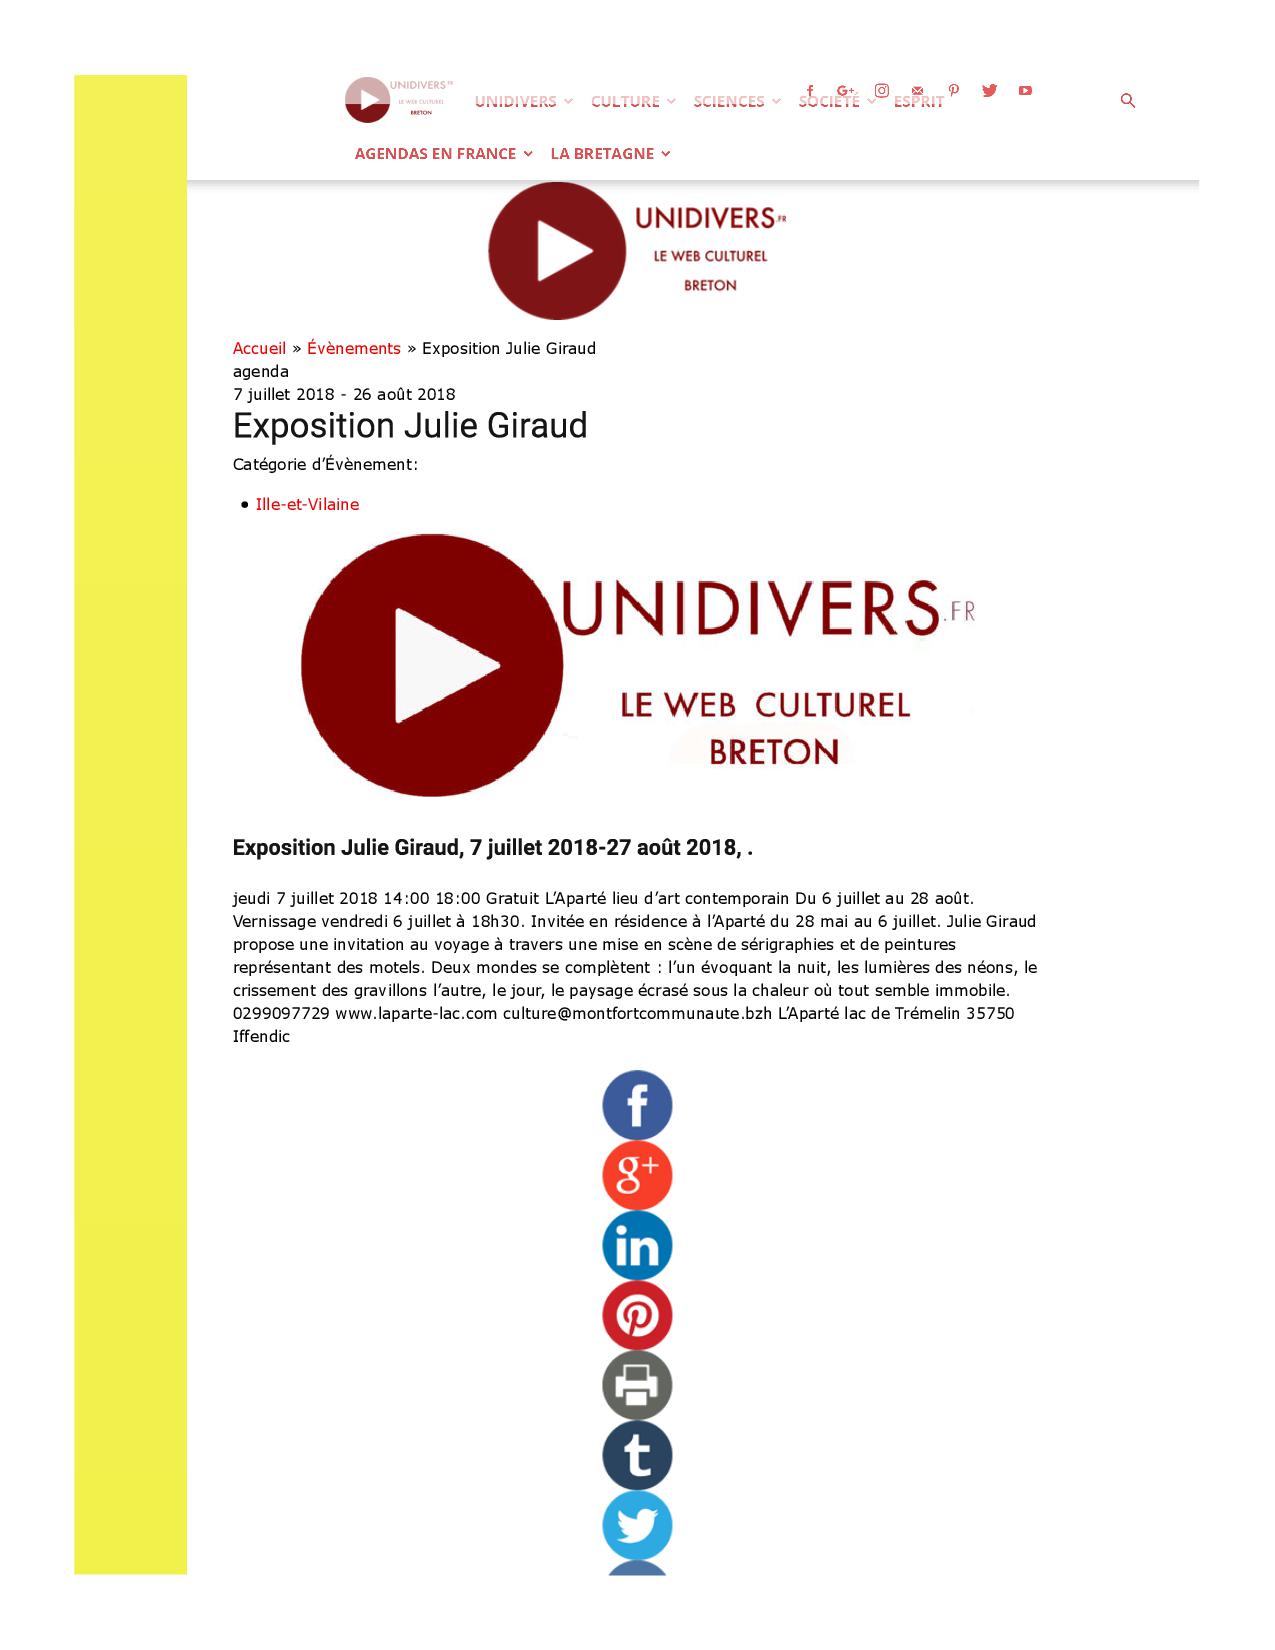 Unidivers.fr